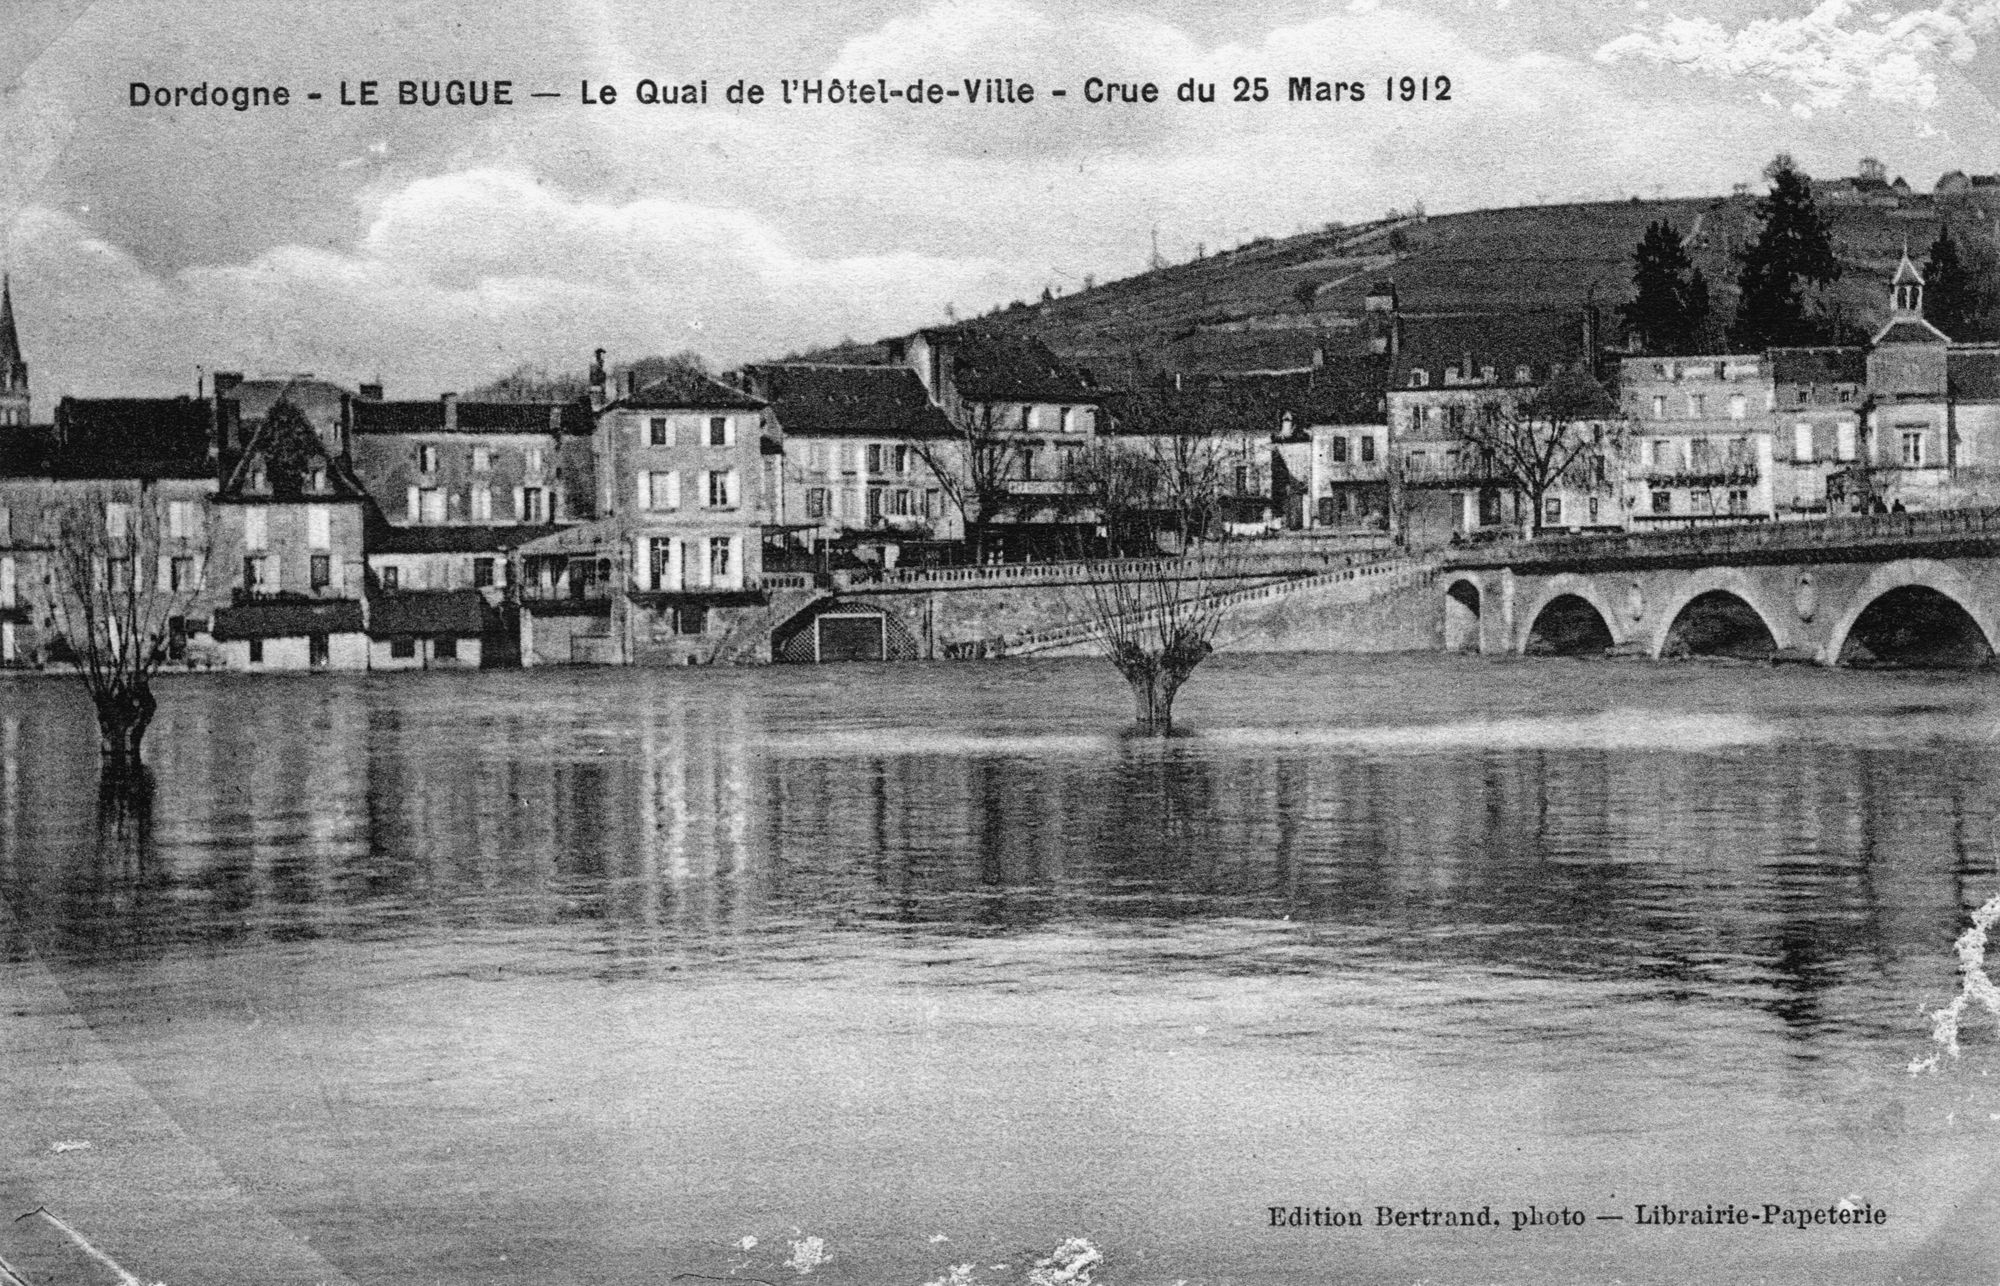 Dordogne – LE BUGUE – Le Quai de l’Hôtel de ville – Crue de la Vézère 25 mars 1912 –
Carte postale – Edition Bertrand, photo – Librairie Papeterie